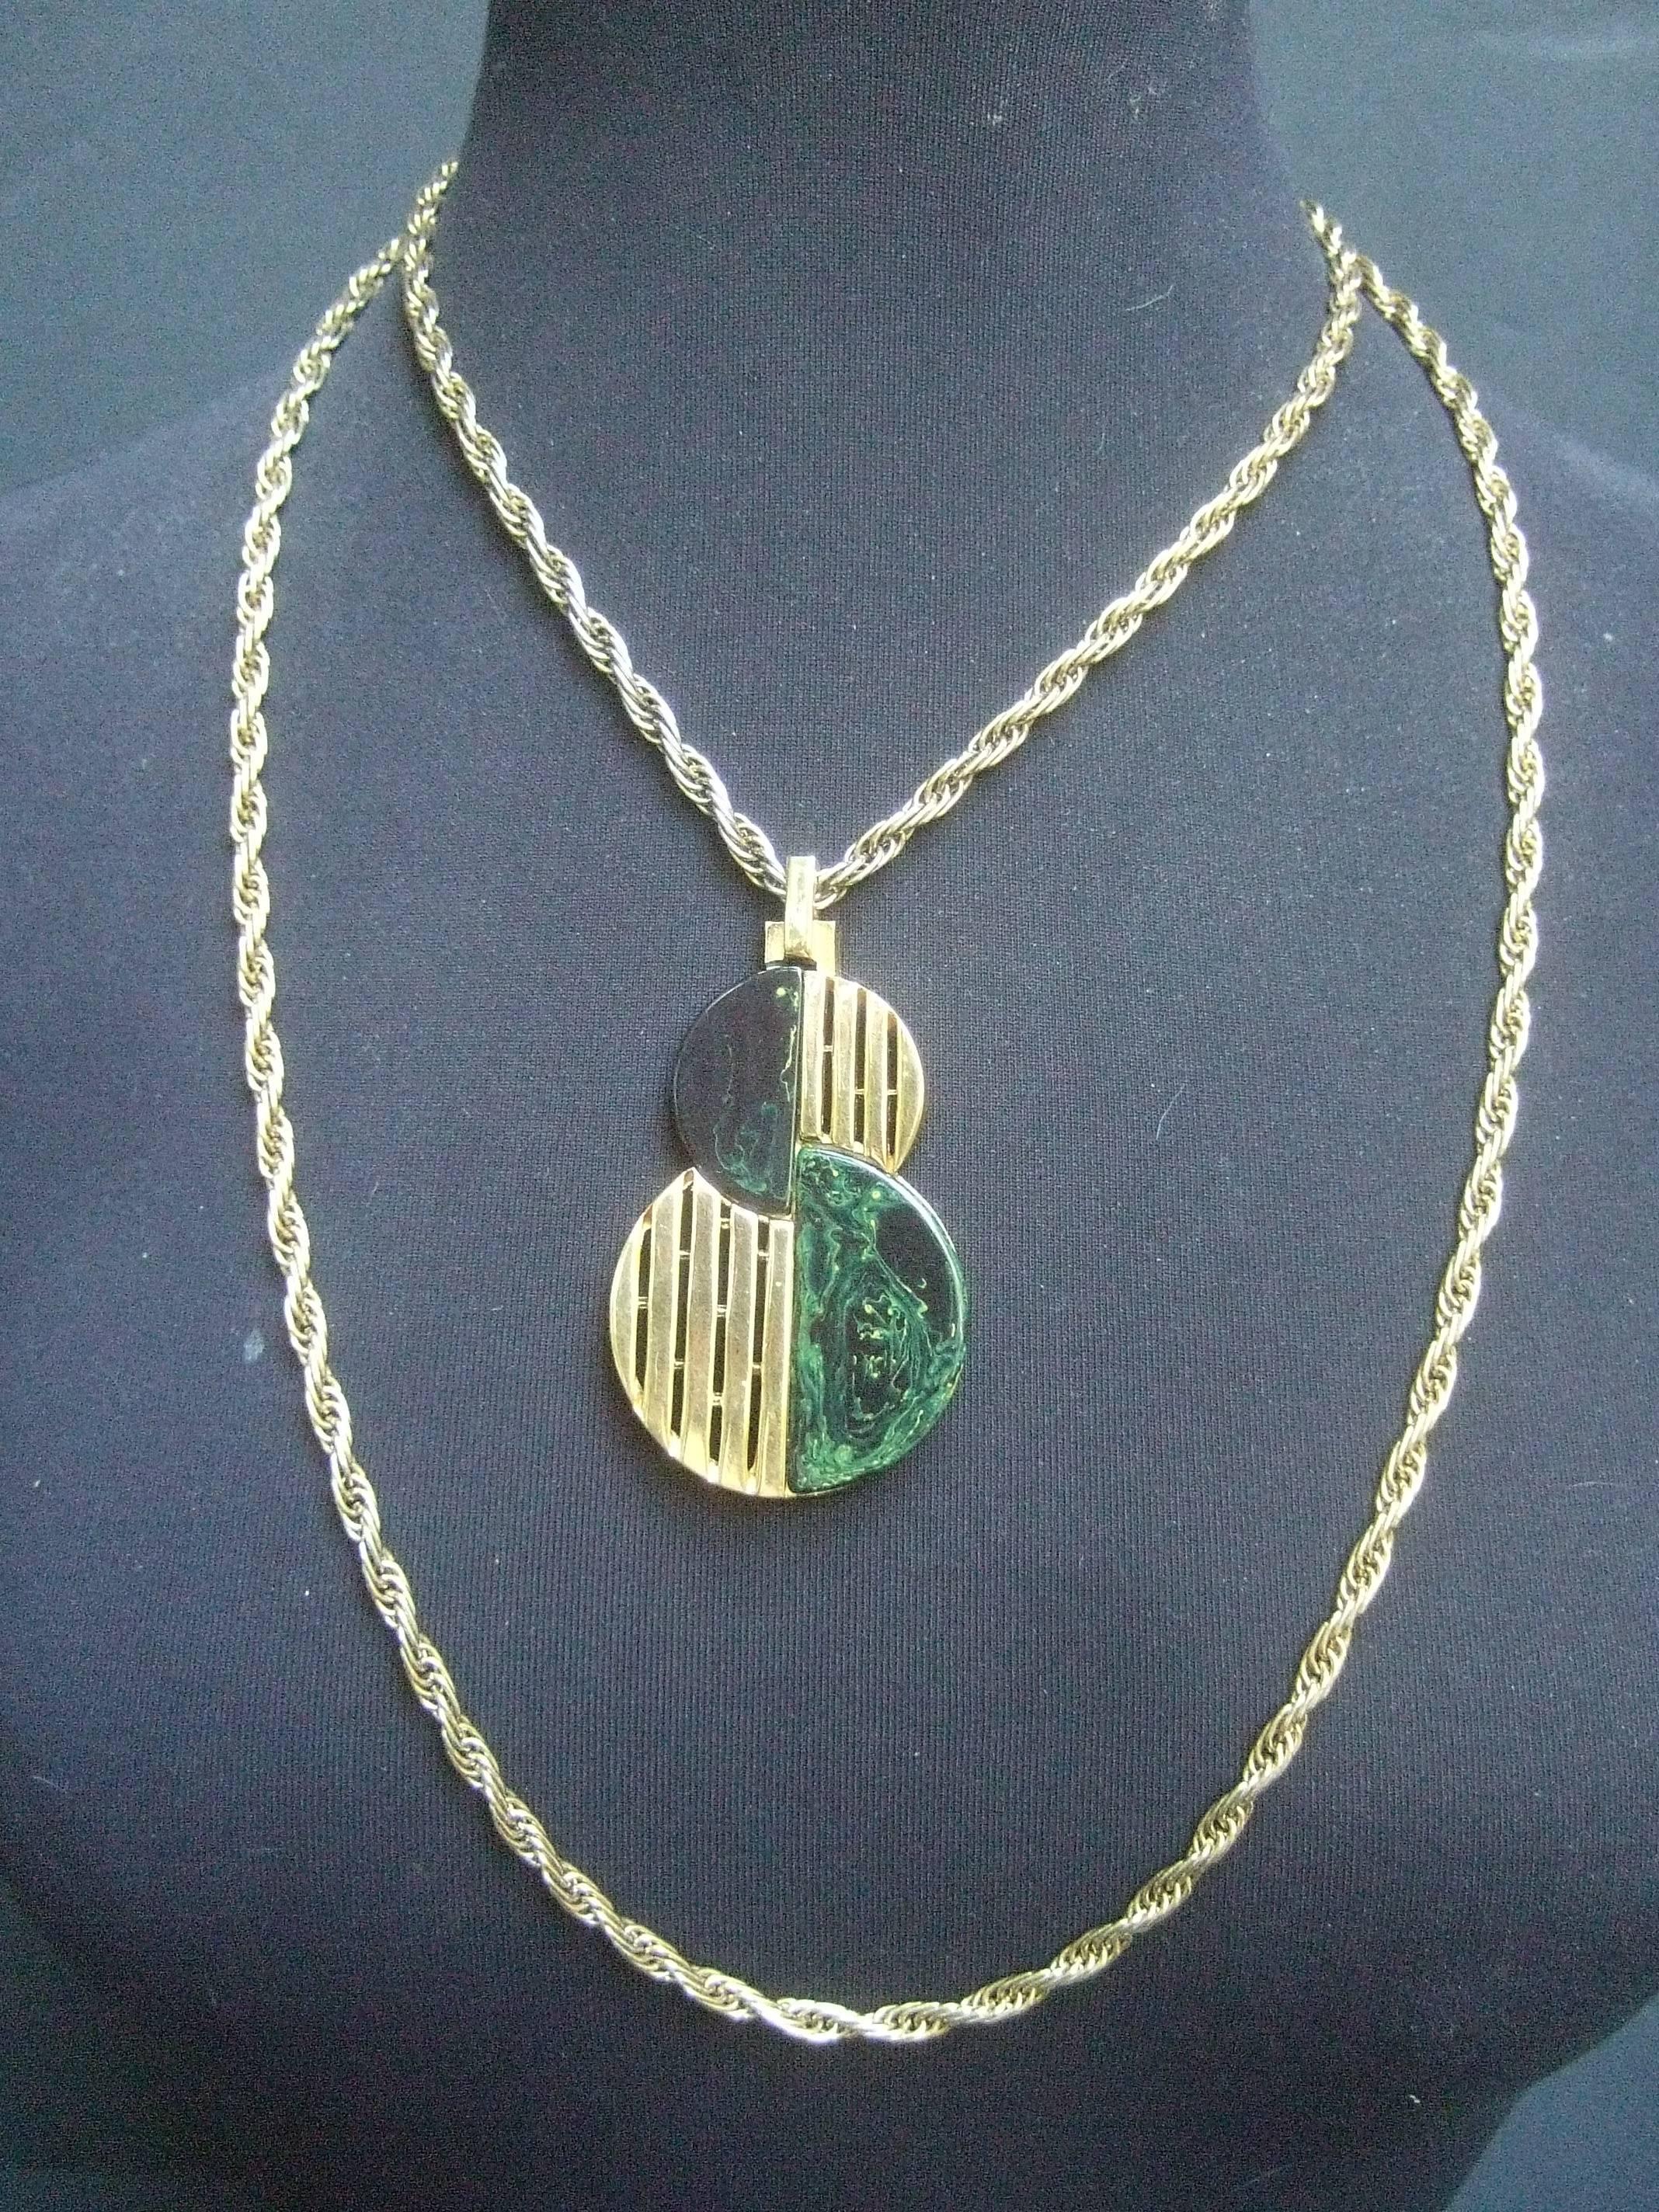 Trifari Collier à pendentifs en lucite et métal doré, c.C. 1970
Le collier minimaliste est conçu avec des    
un pendentif circulaire

Le pendentif sévère est conçu avec des
bandes de métal doré juxtaposées à de la lucite verte
des carreaux